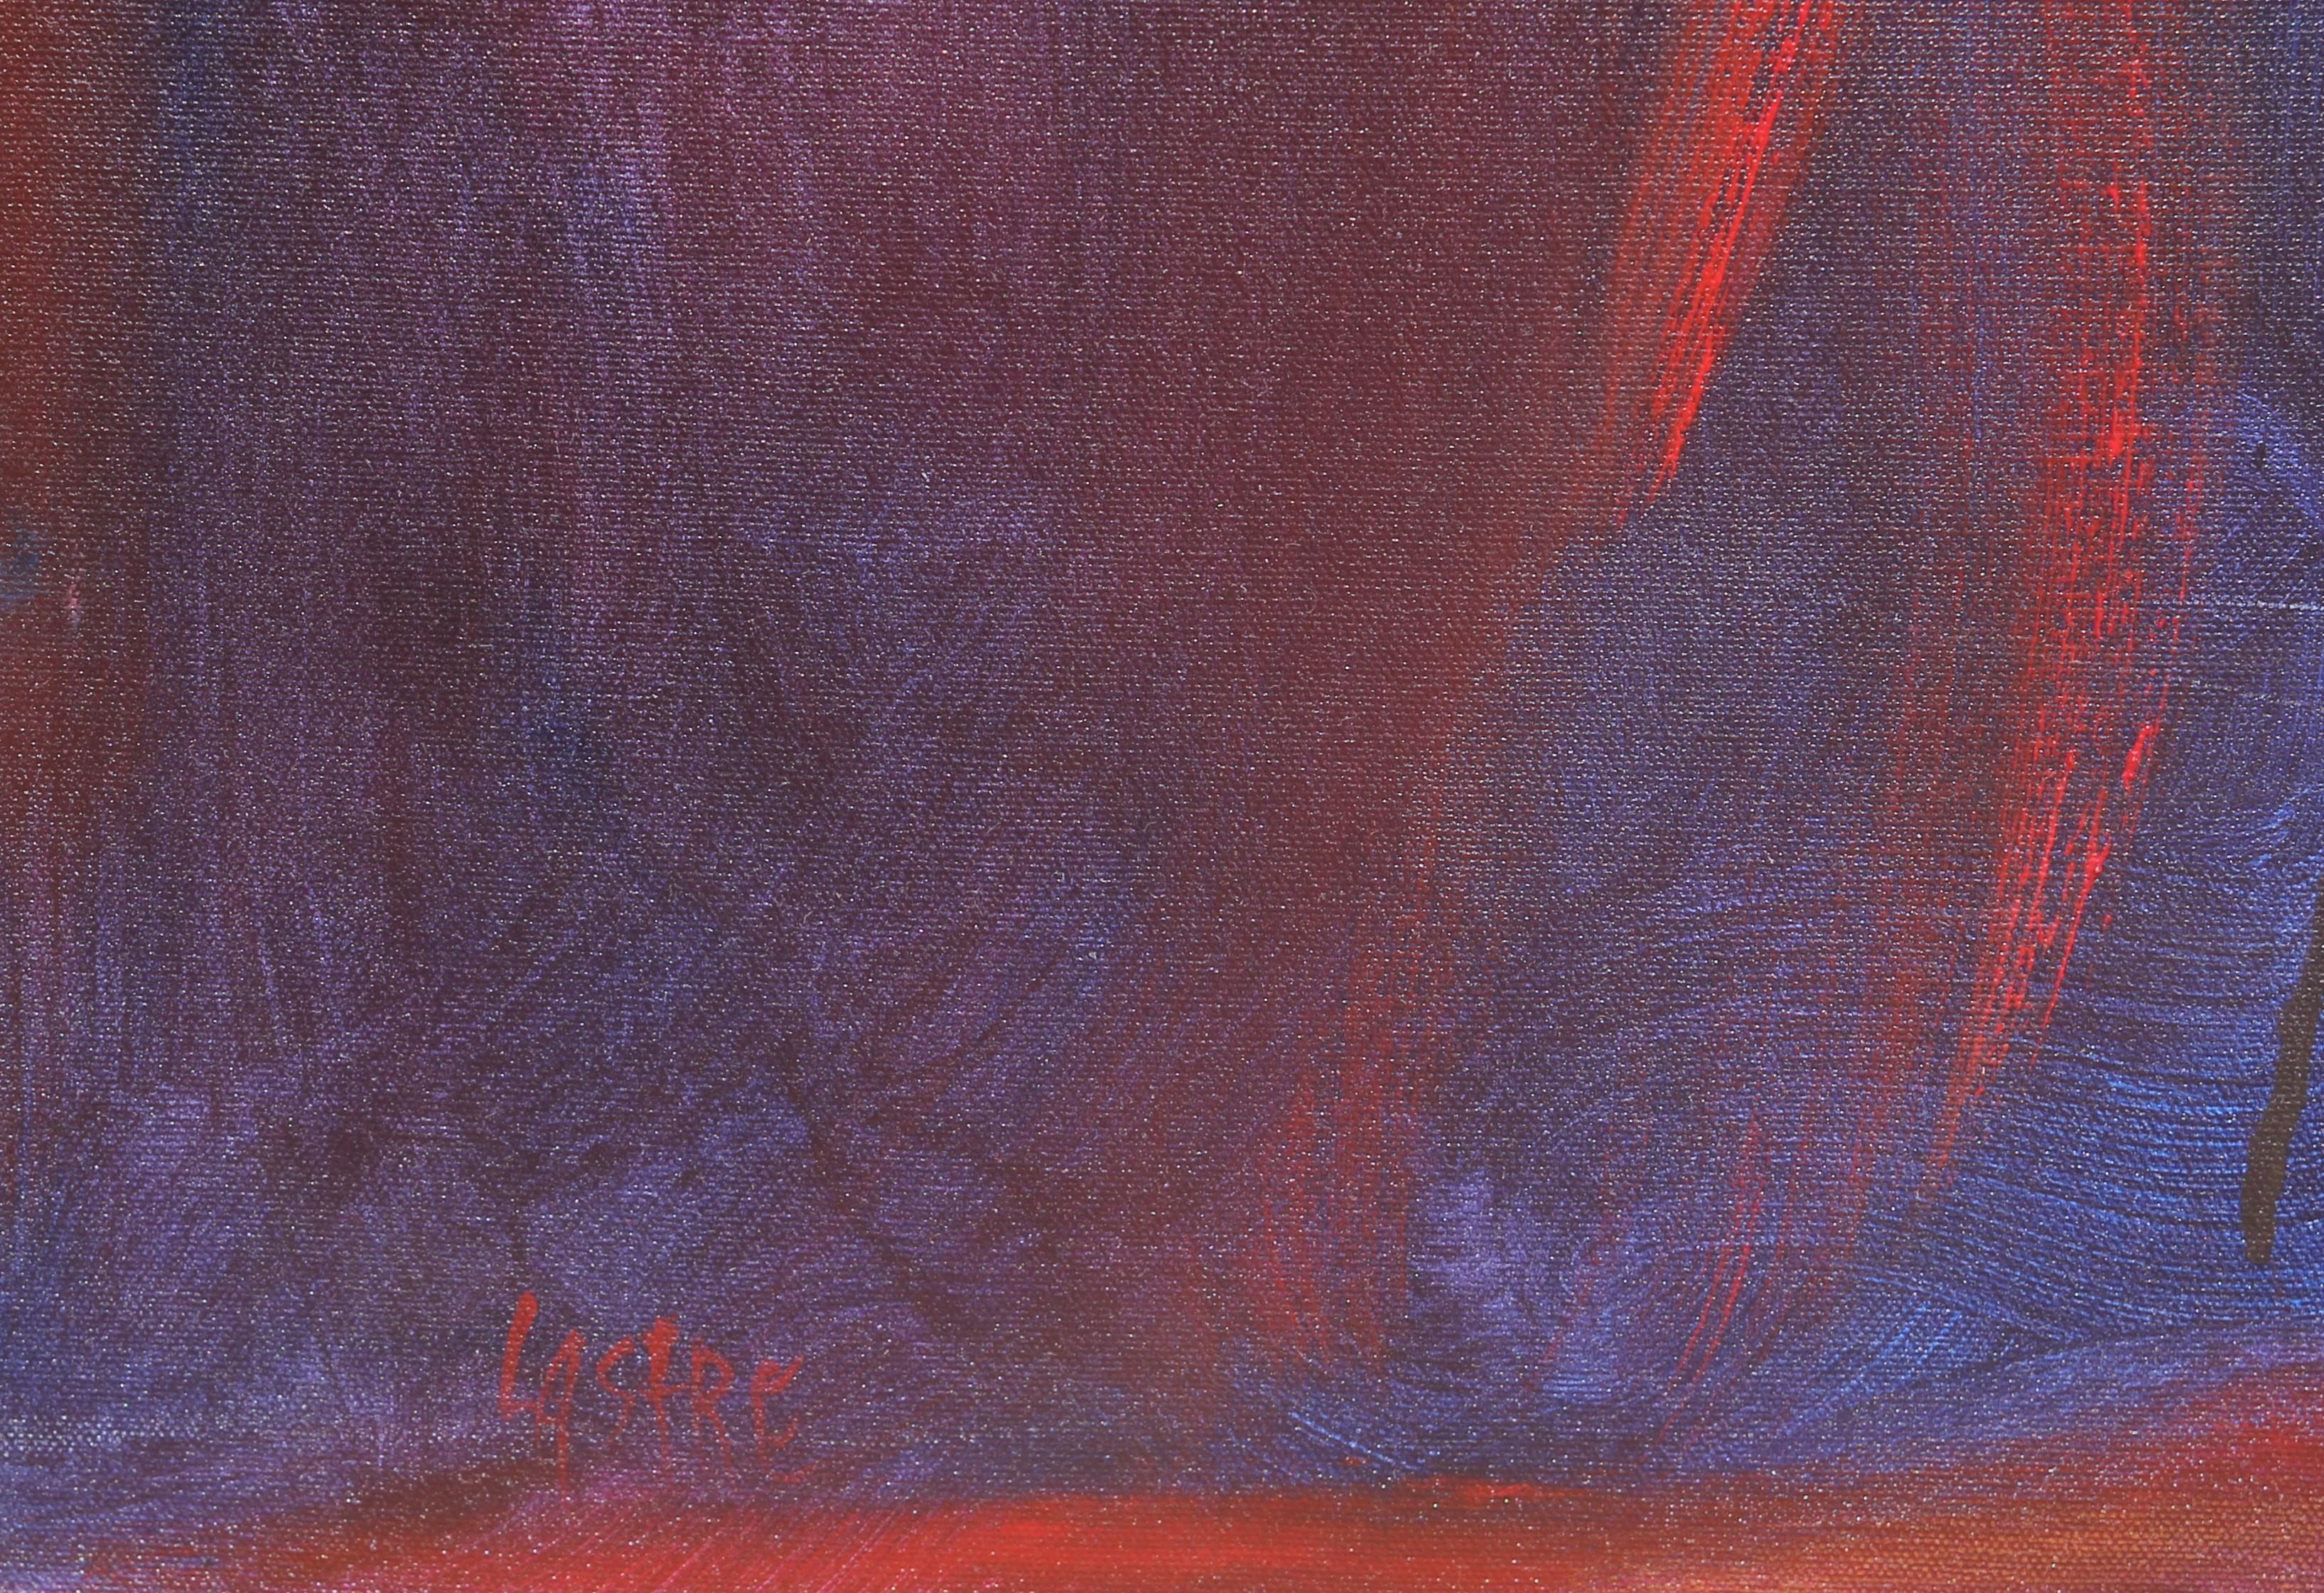 Grande peinture expressionniste abstraite rouge, orange et bleue en forme de V sonnant - Painting de Karen Lastre